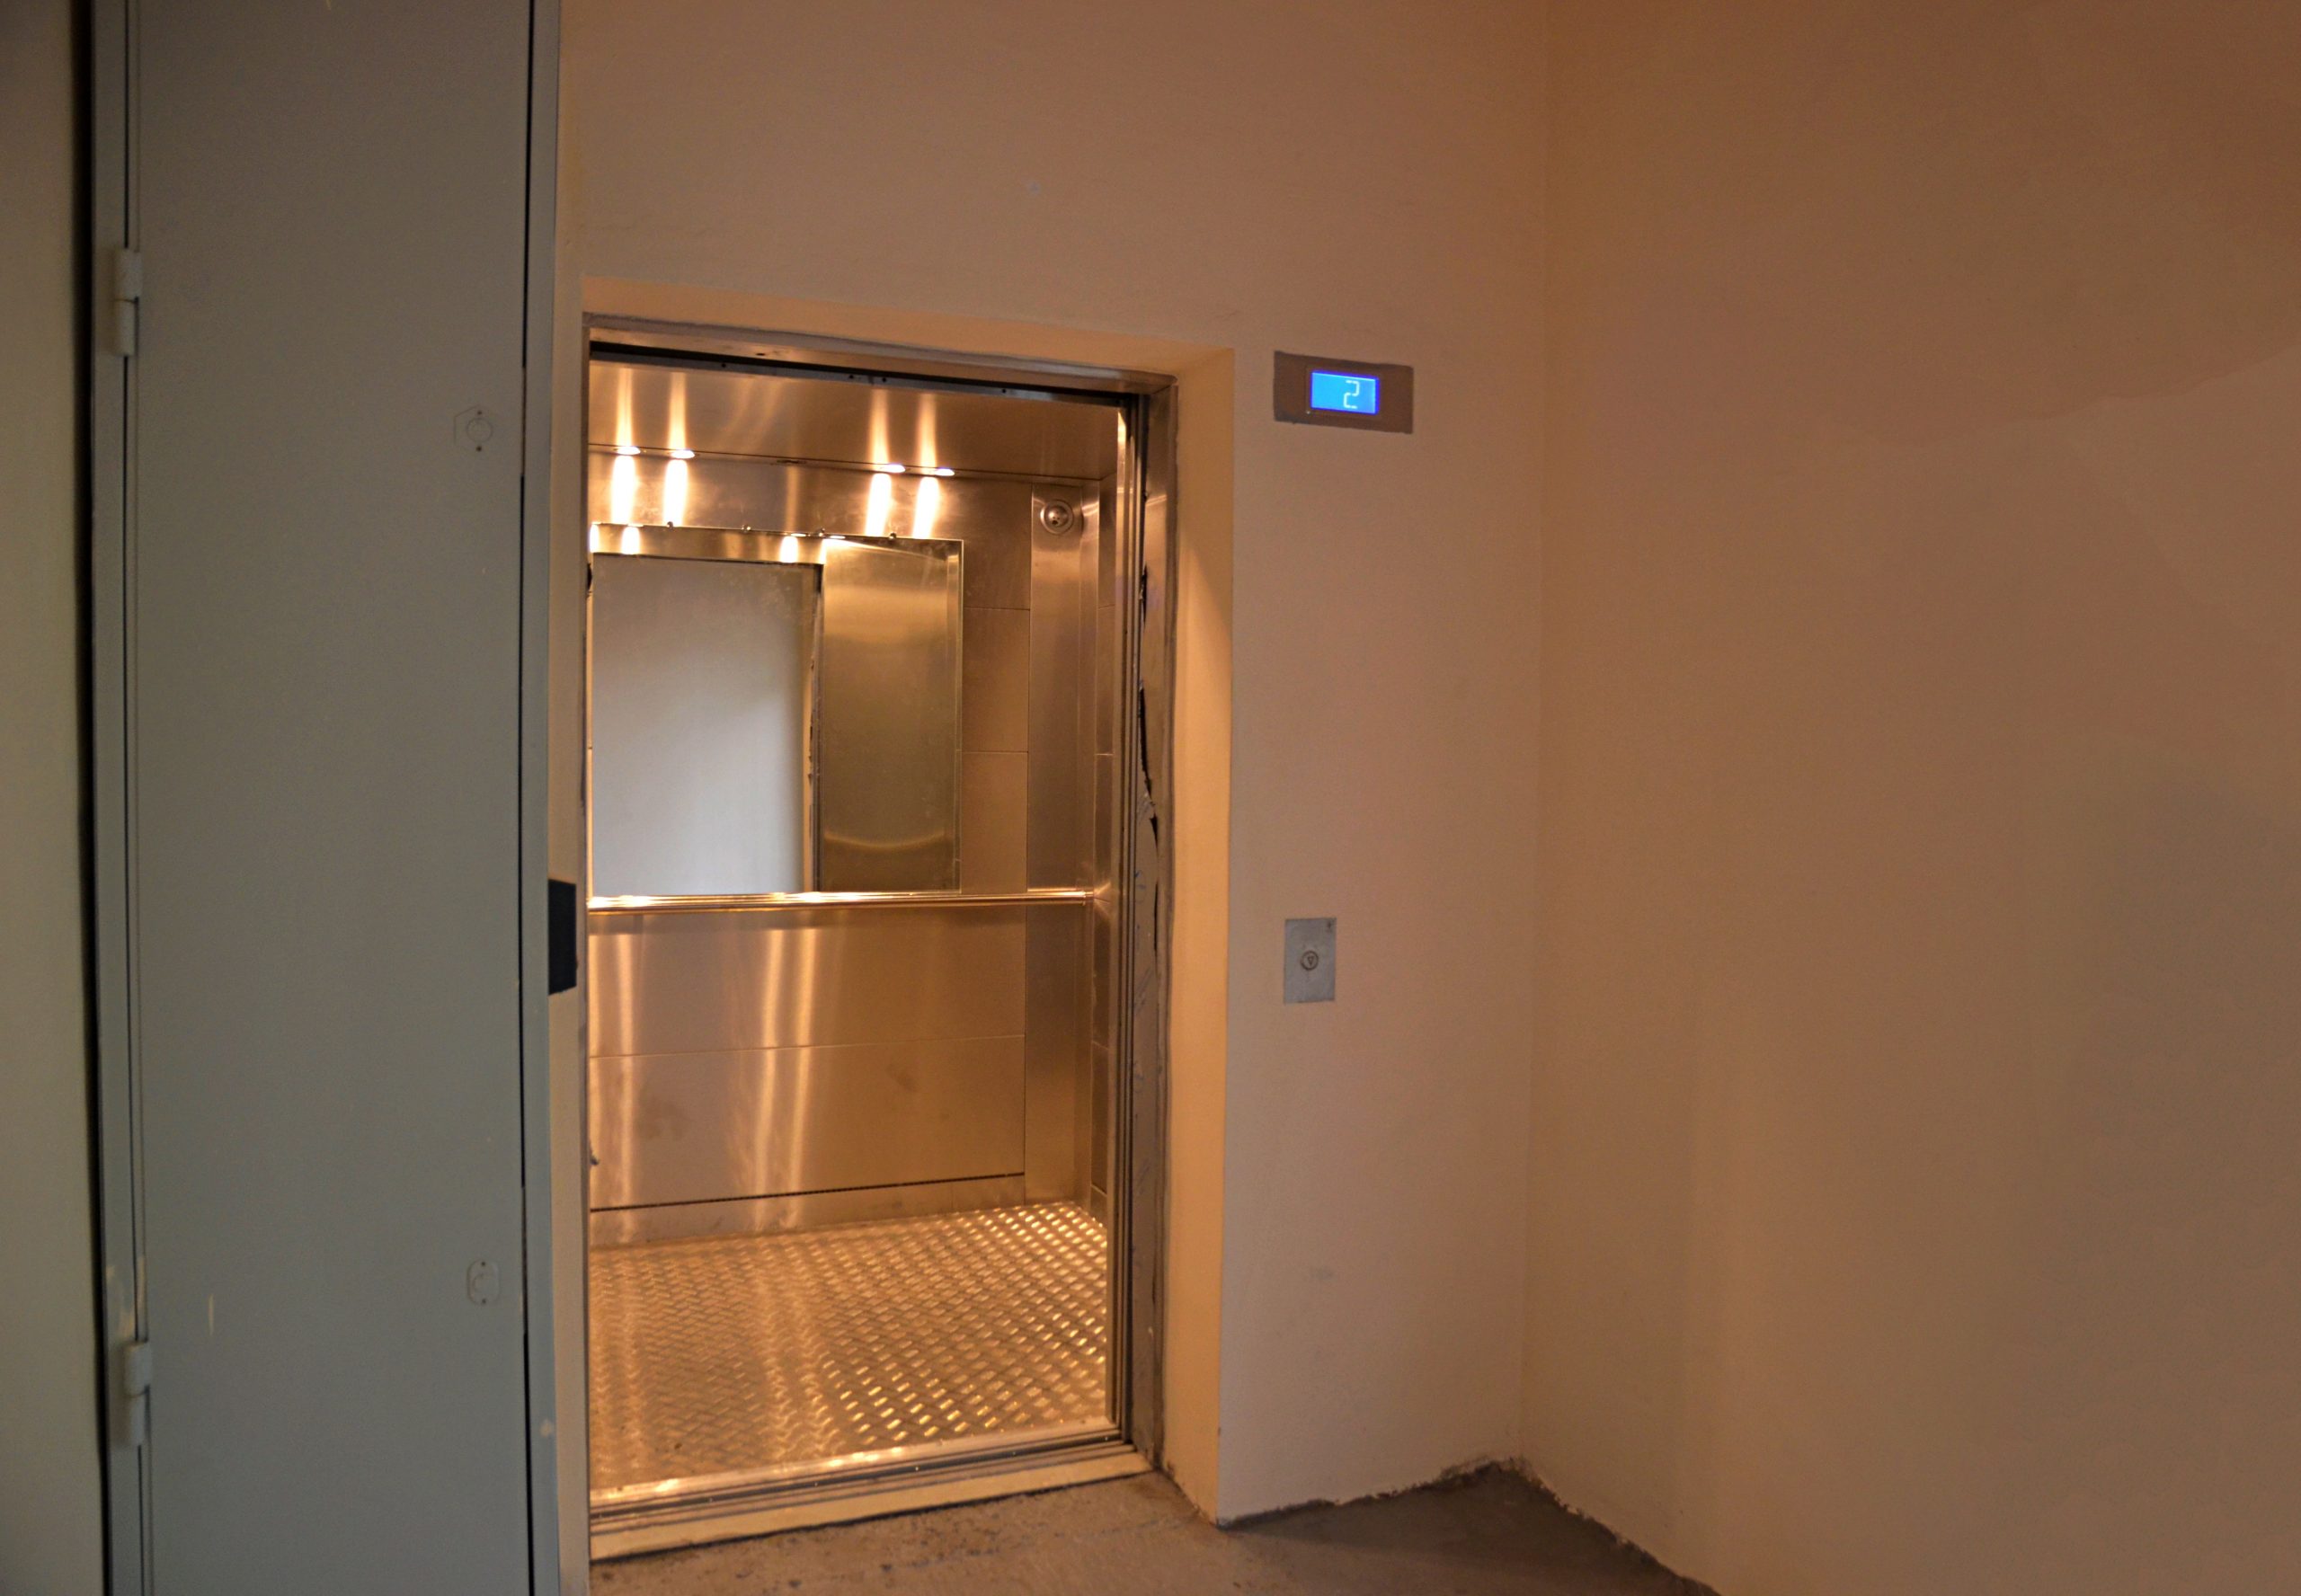 Установку лифтов больницы имени Юдина согласовали в Мосгосэкспертизе. Фото: Анна Быкова